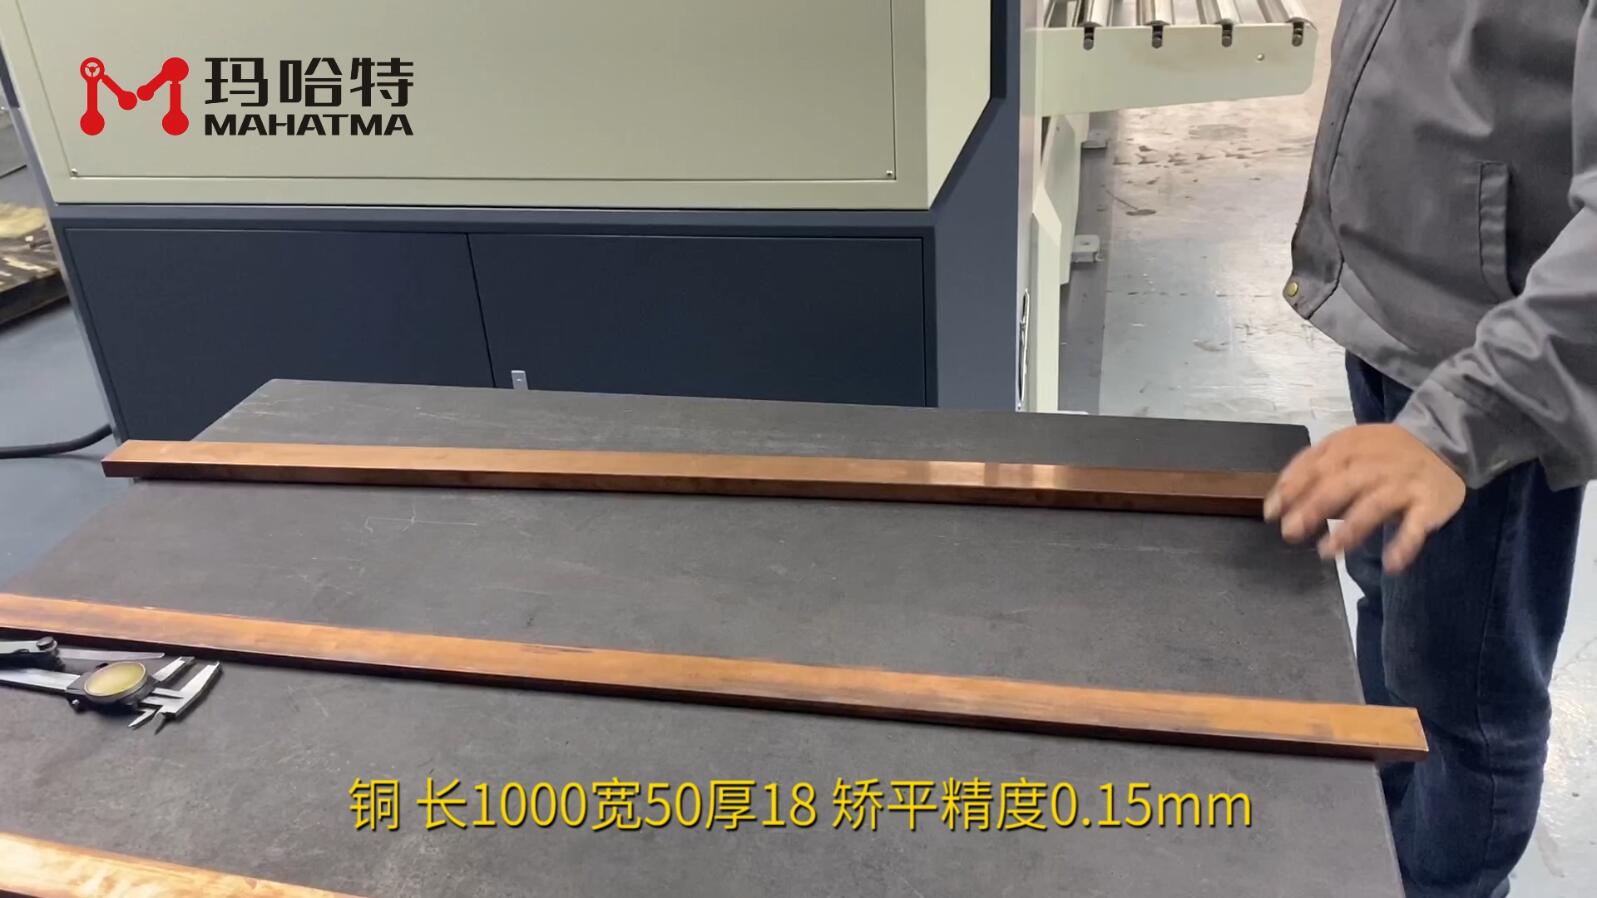 铜 MHT120-1300 长方形 长1000宽50厚18 矫平精度0.15mm